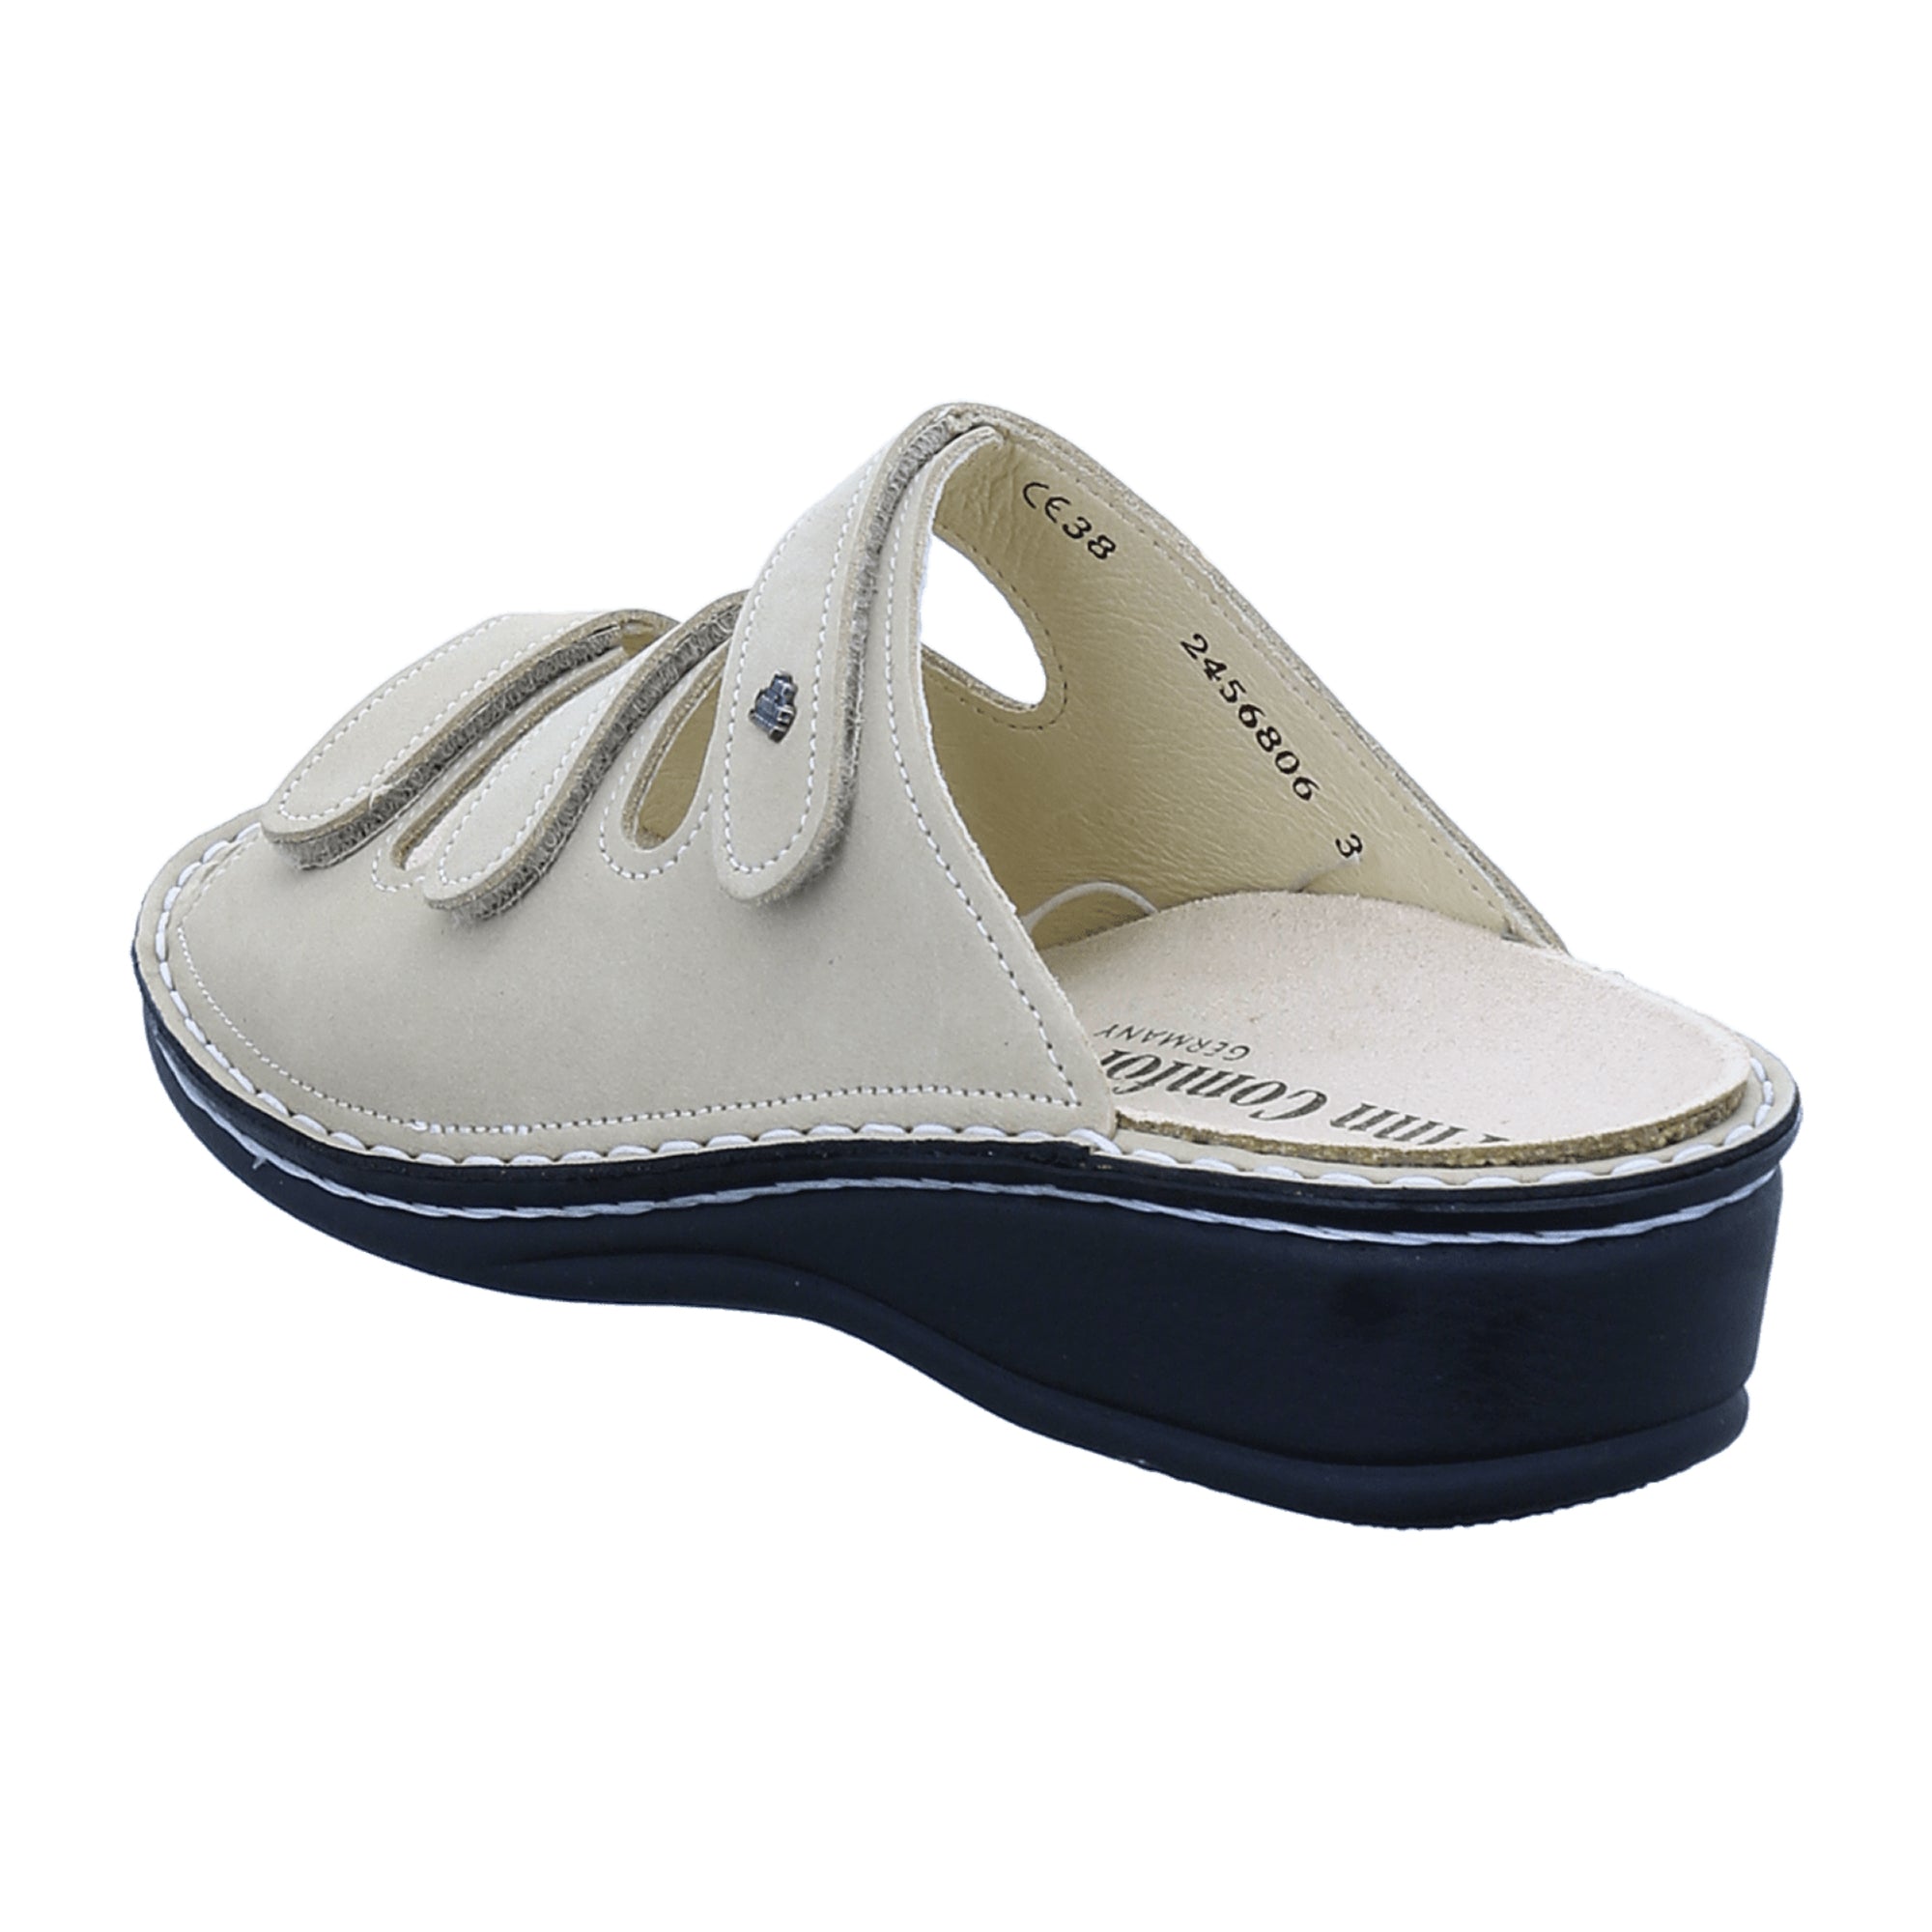 Finn Comfort Pisa Women's Sandals - Stylish & Comfortable in Beige